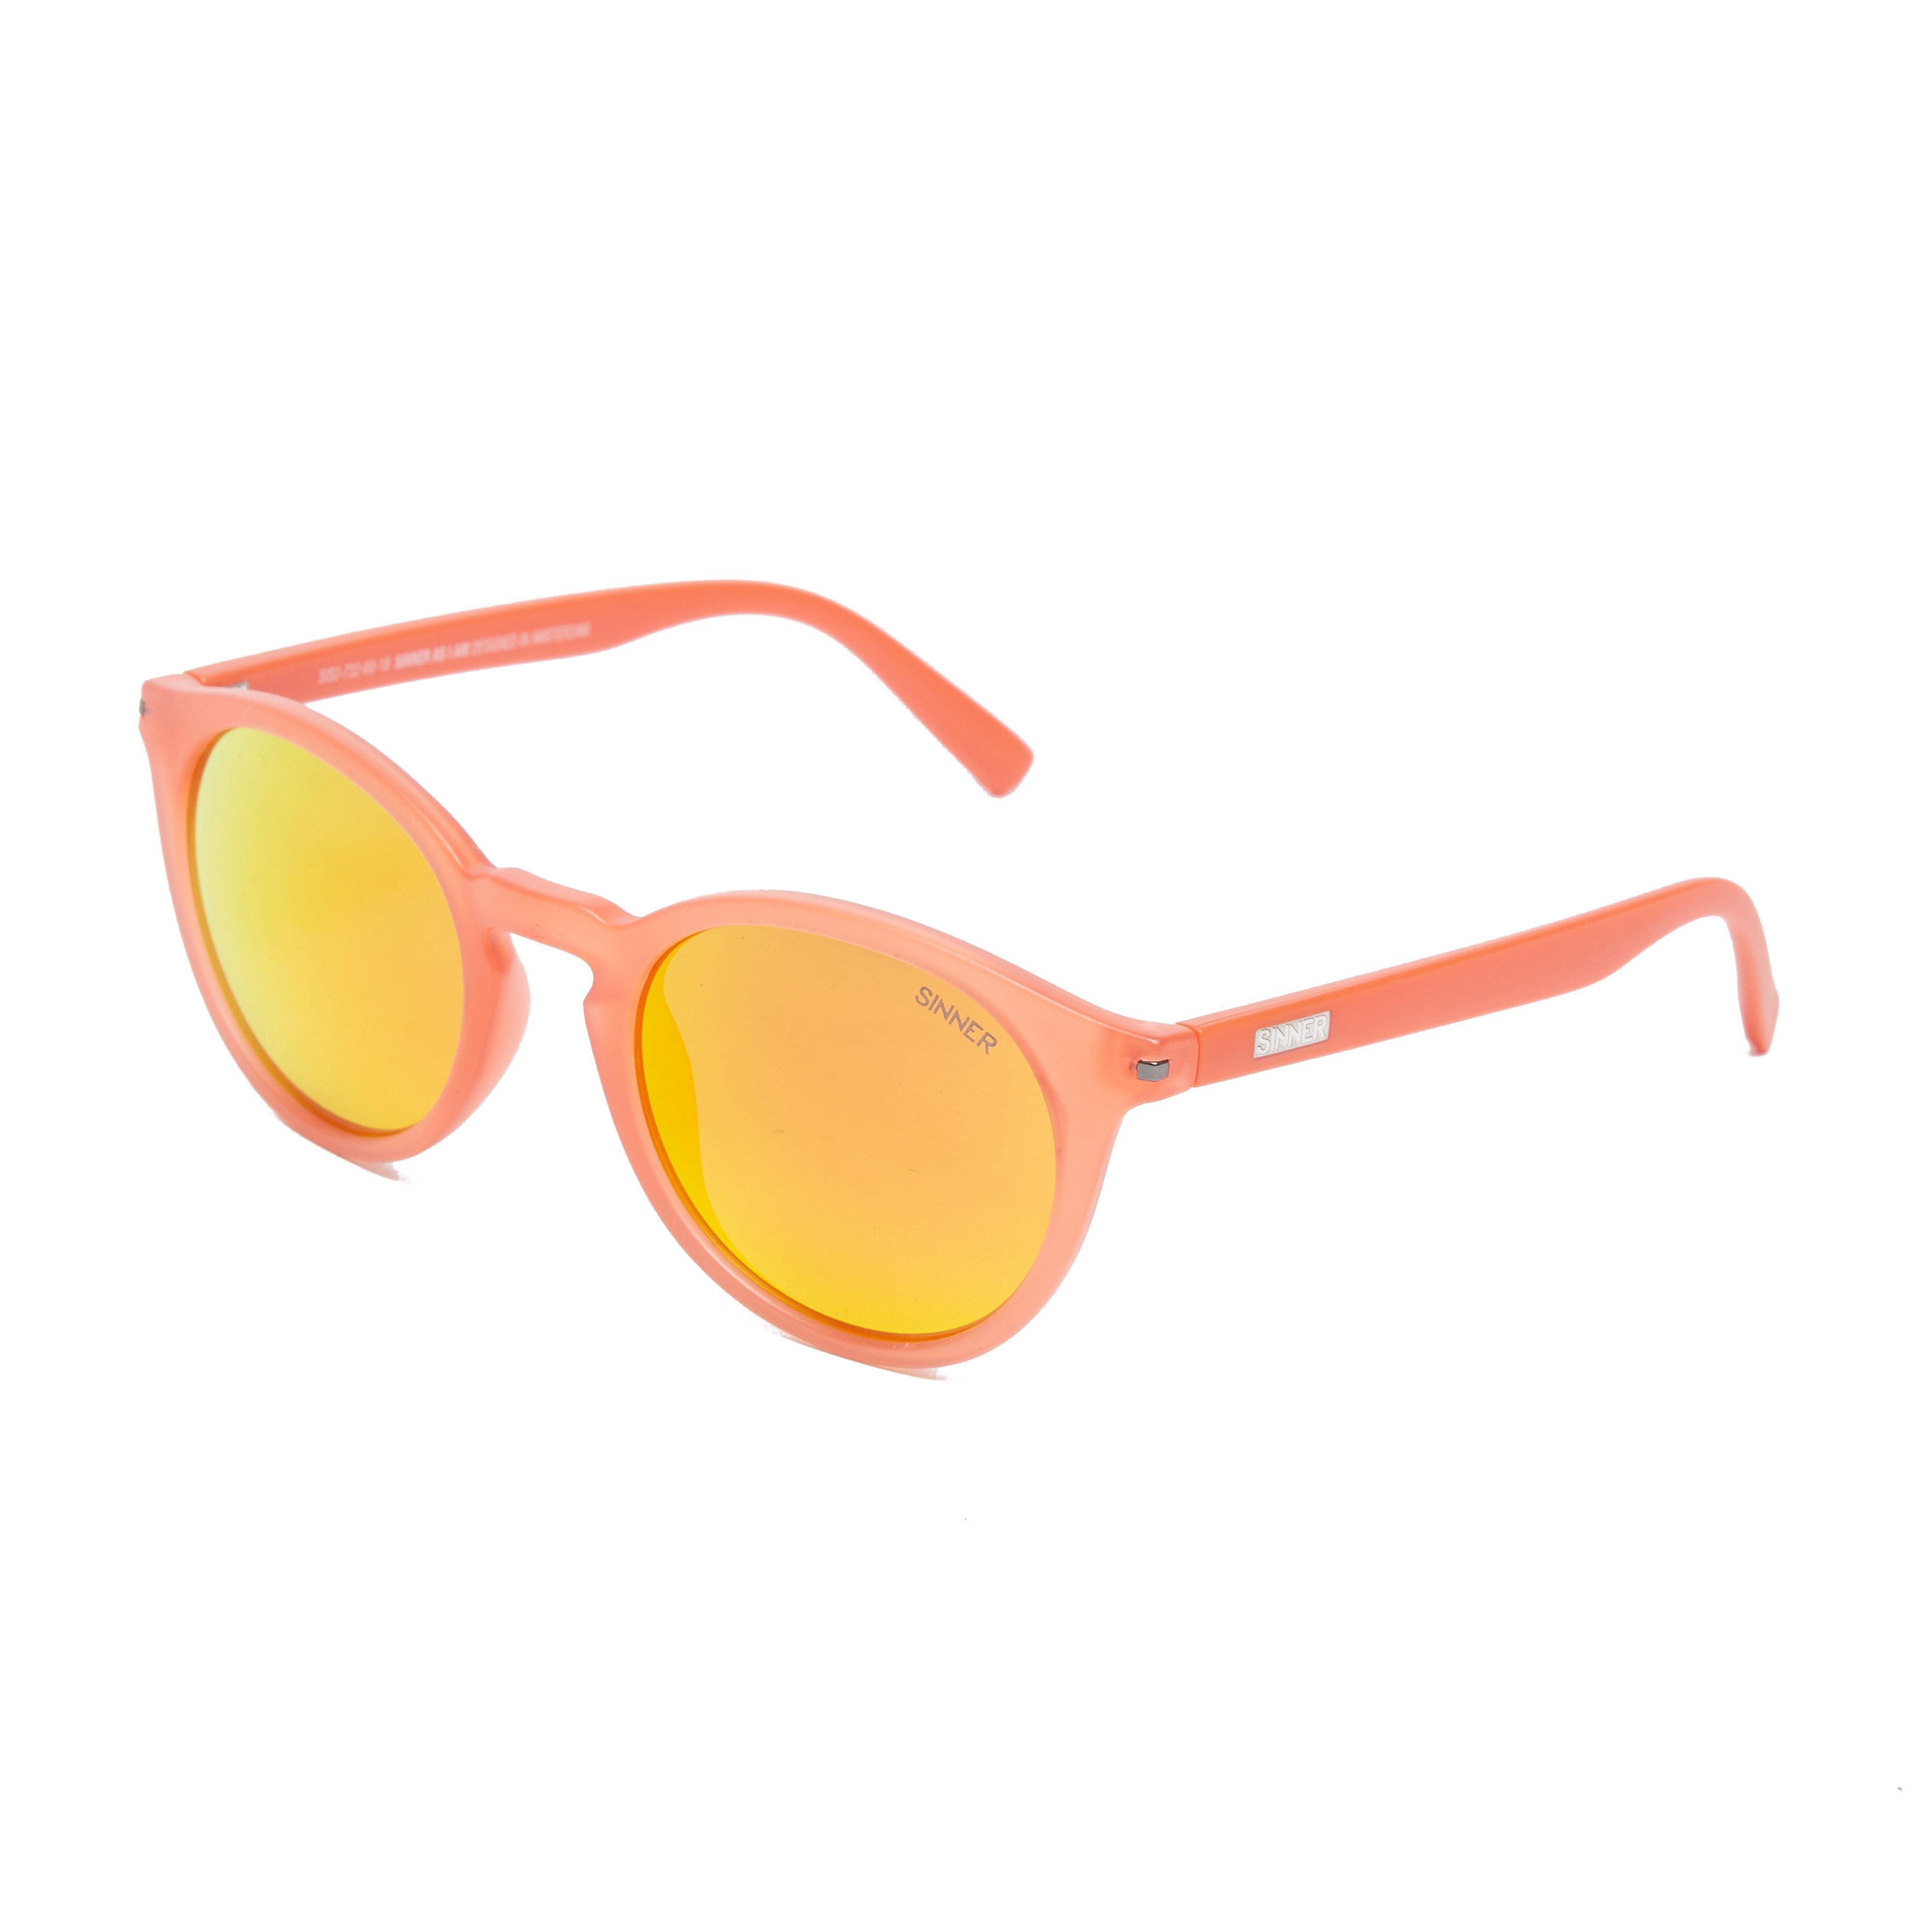 Patnem Sunglasses Orange